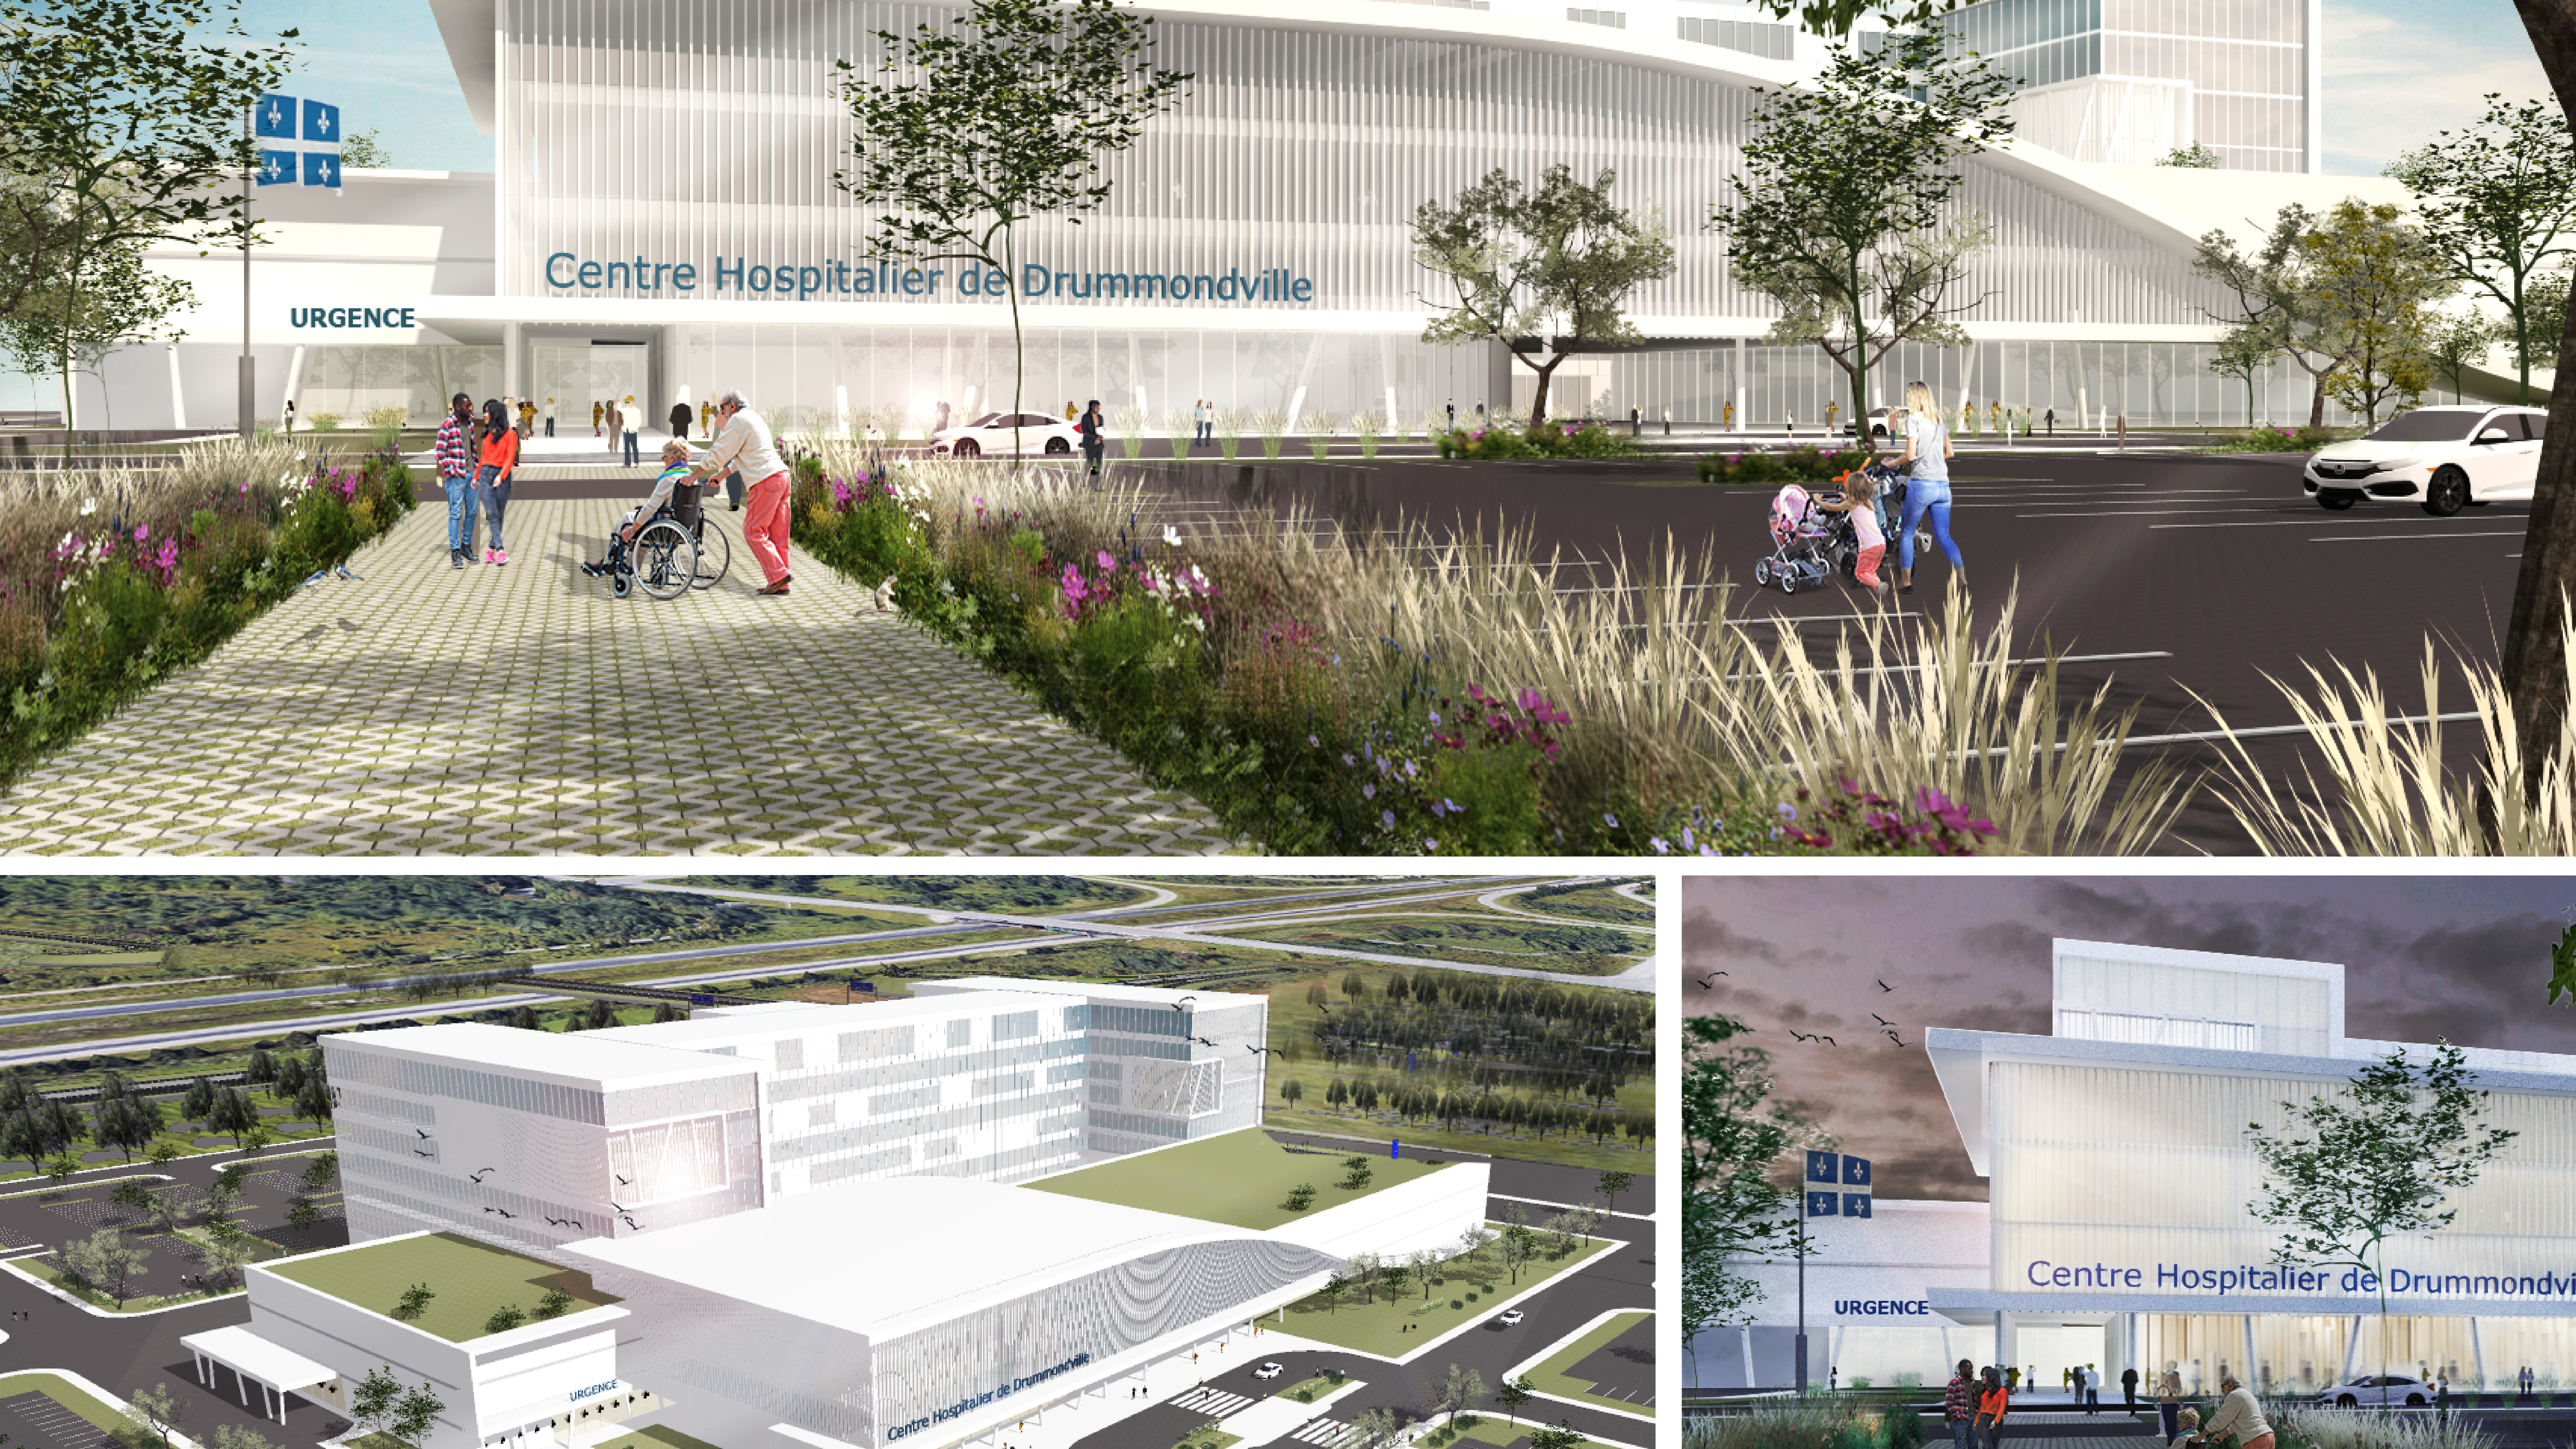 On remarque que le futur centre hospitalier régional à Drummondville pourrait être situé en bordure d'autoroute. Il ne s'agit cependant pas des plans officiels des architectes et le choix du site n'a pas encore été défini comme nous l'a indiqué Guillaume Cliche, agent d'informations au CIUSSS Mauricie/Centre-du-Québec.